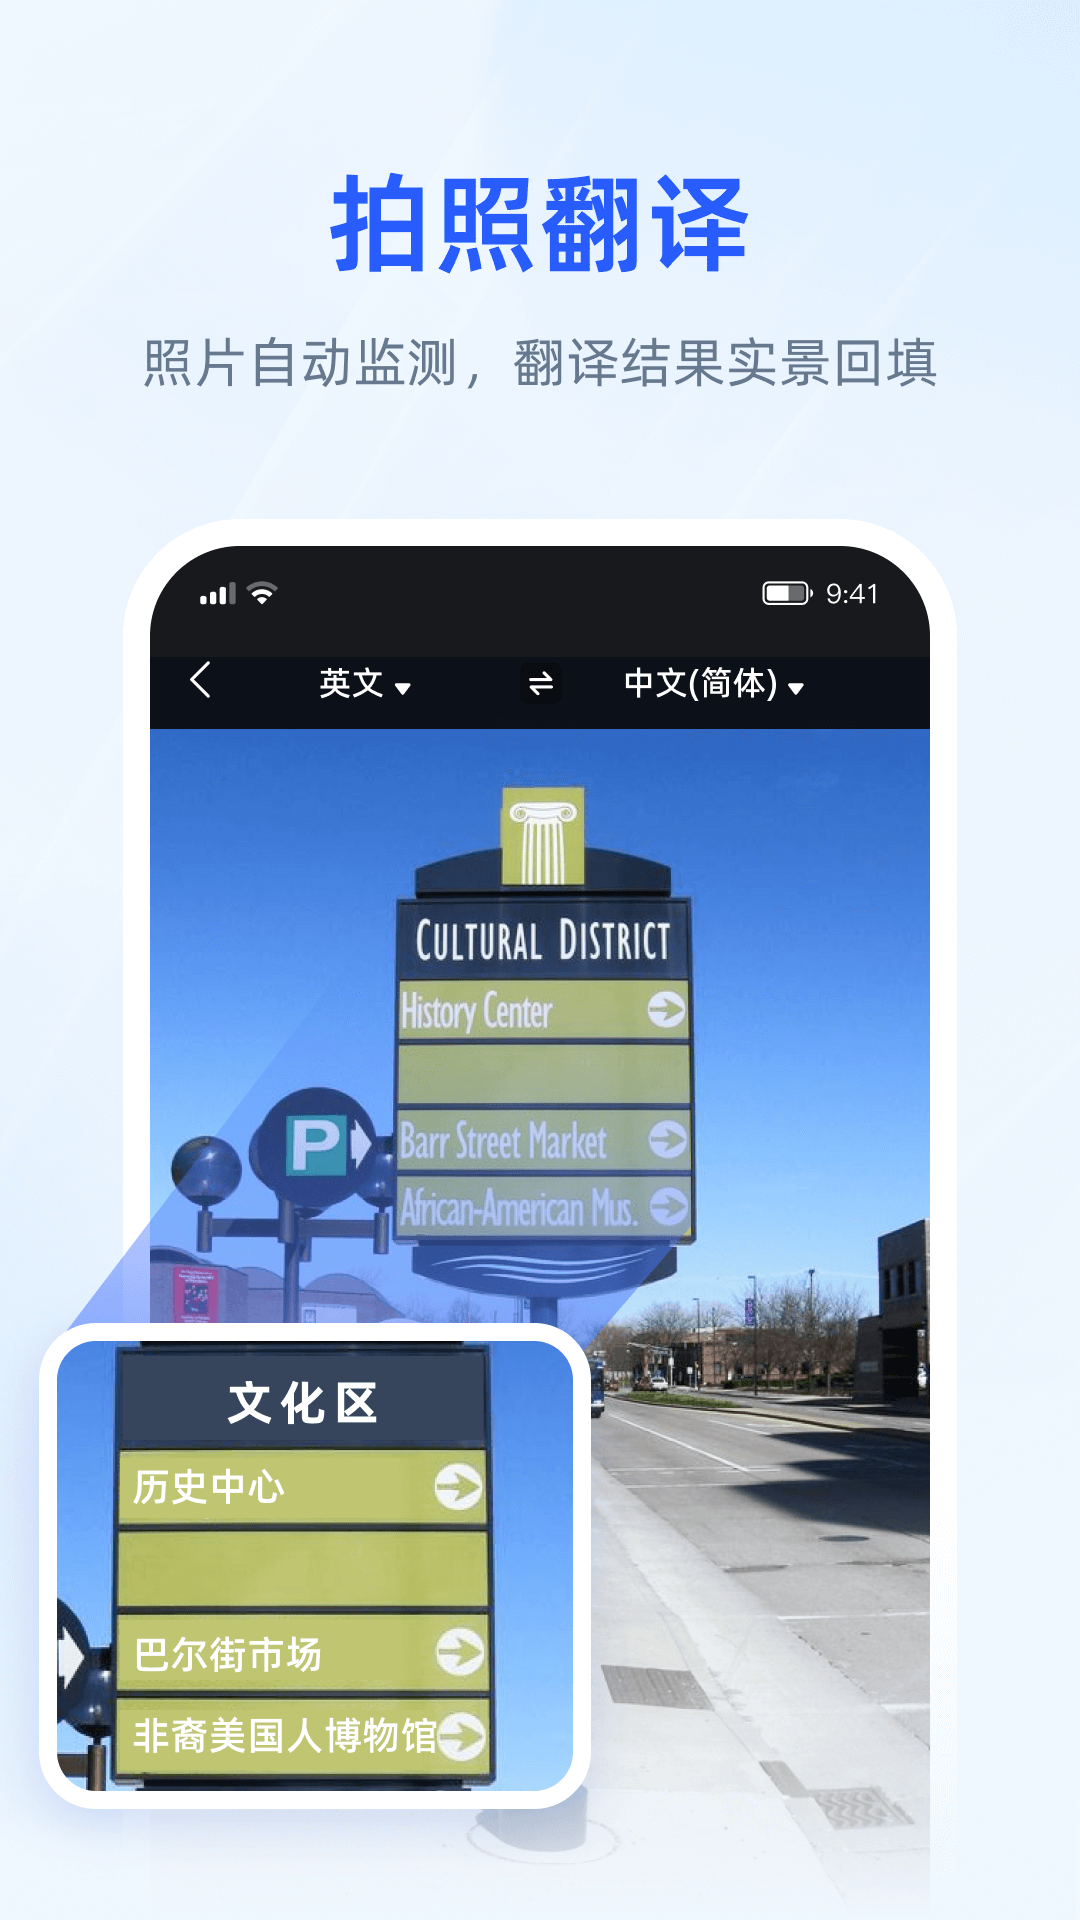 脉蜀翻译专家app下载,脉蜀翻译专家app安卓版 v1.0.0